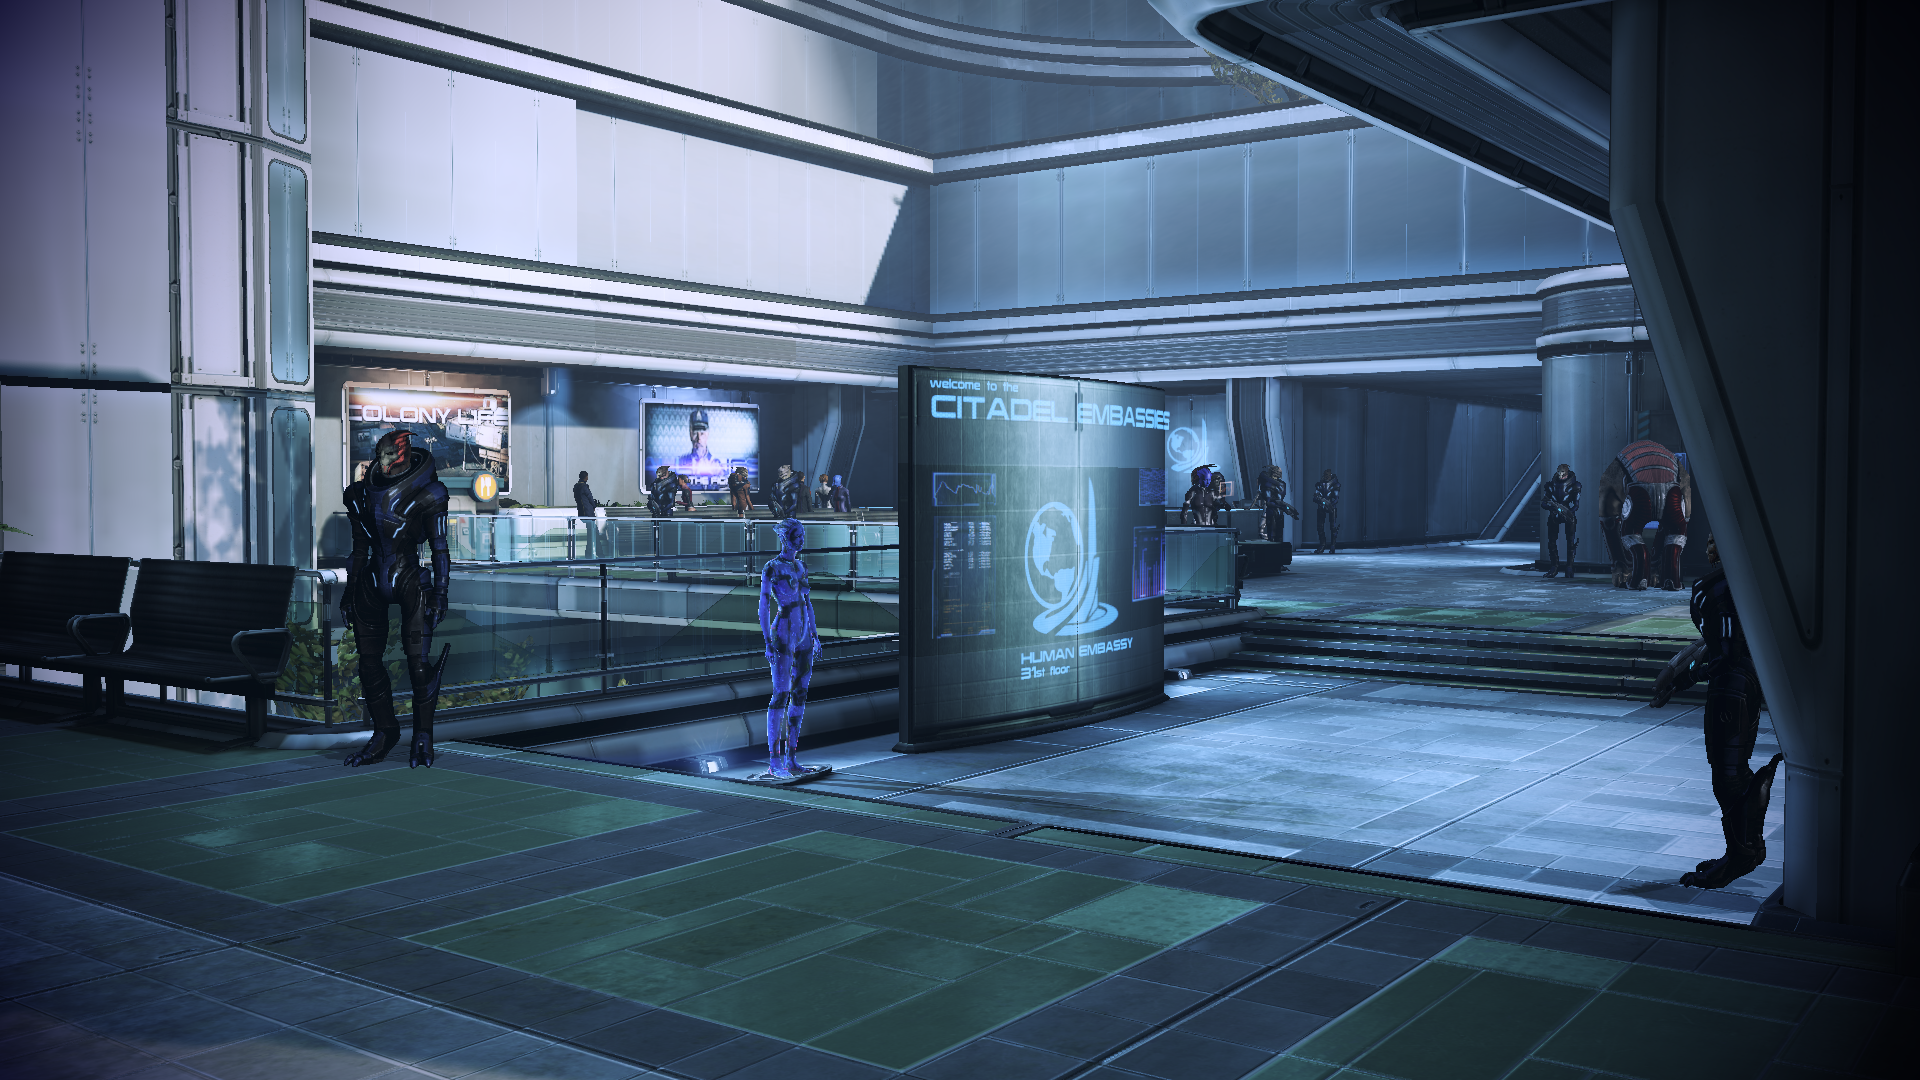 Citadel Embassies Mass Effect Mass Effect Citadel Citadel